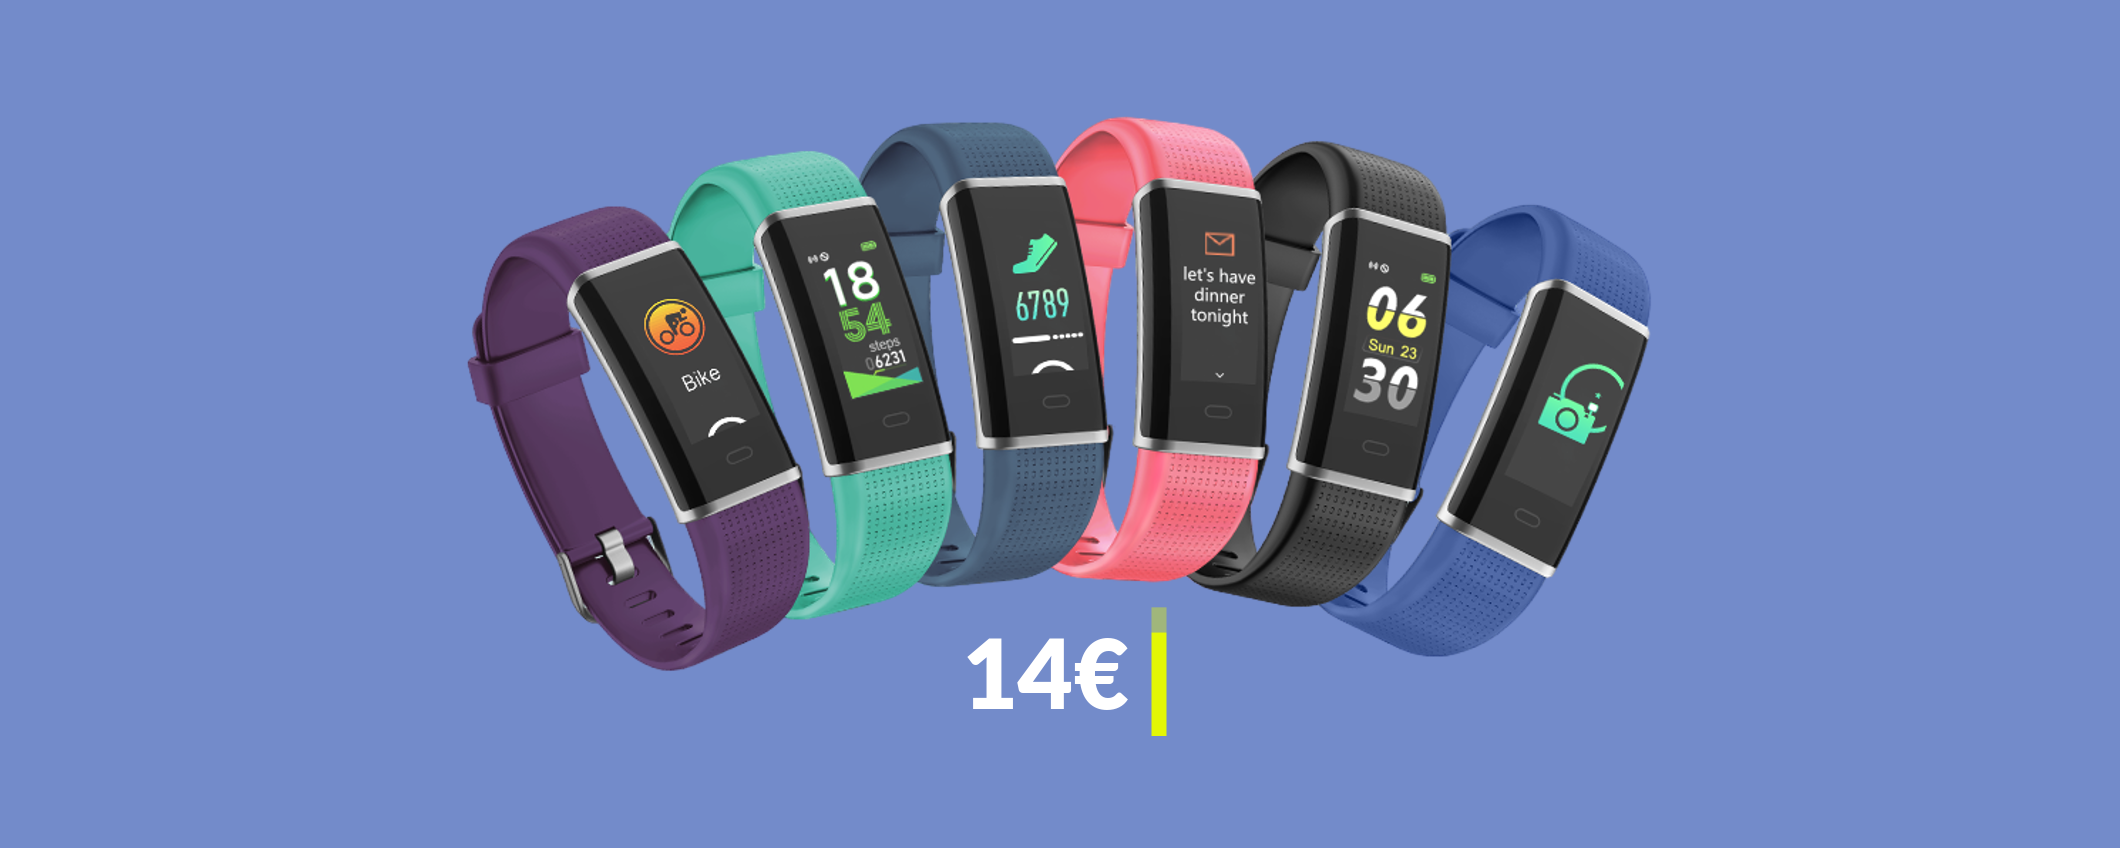 Questo smartwatch impermeabile per il fitness è già tuo con 14€